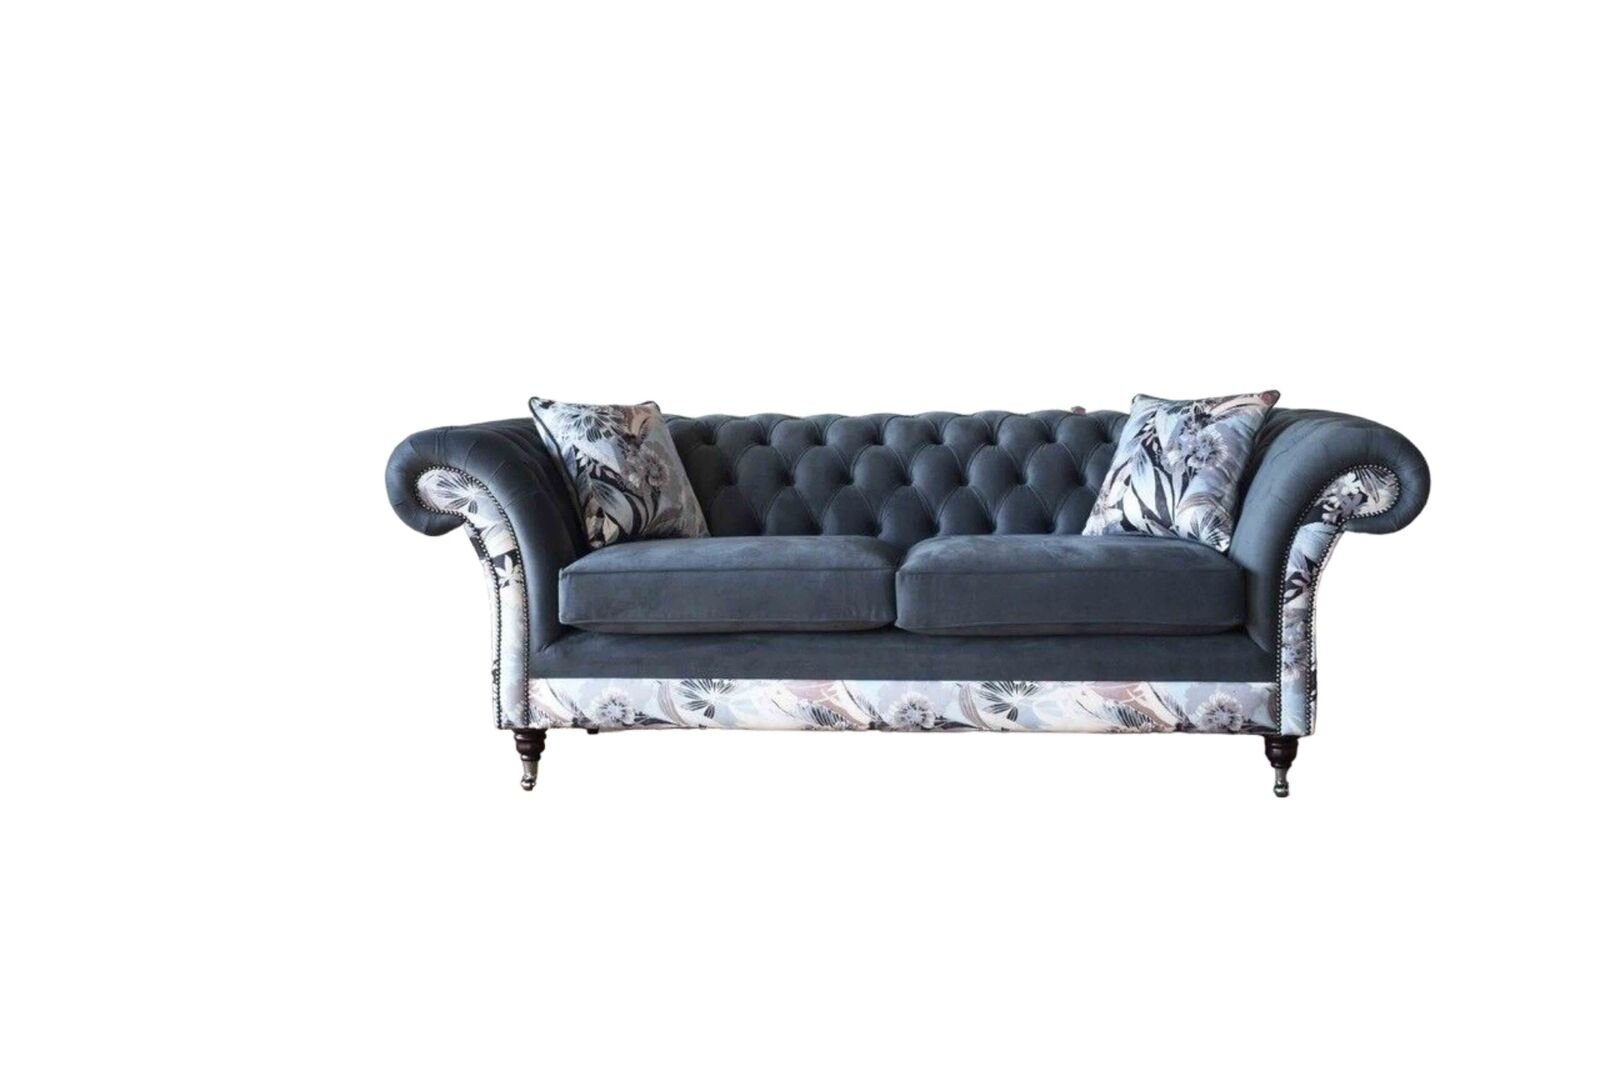 JVmoebel Sofa Blauer Dreisitzer Design Polster Sitz Textil Sofa 3 Sitzer Luxus Couch, Made in Europe | Alle Sofas